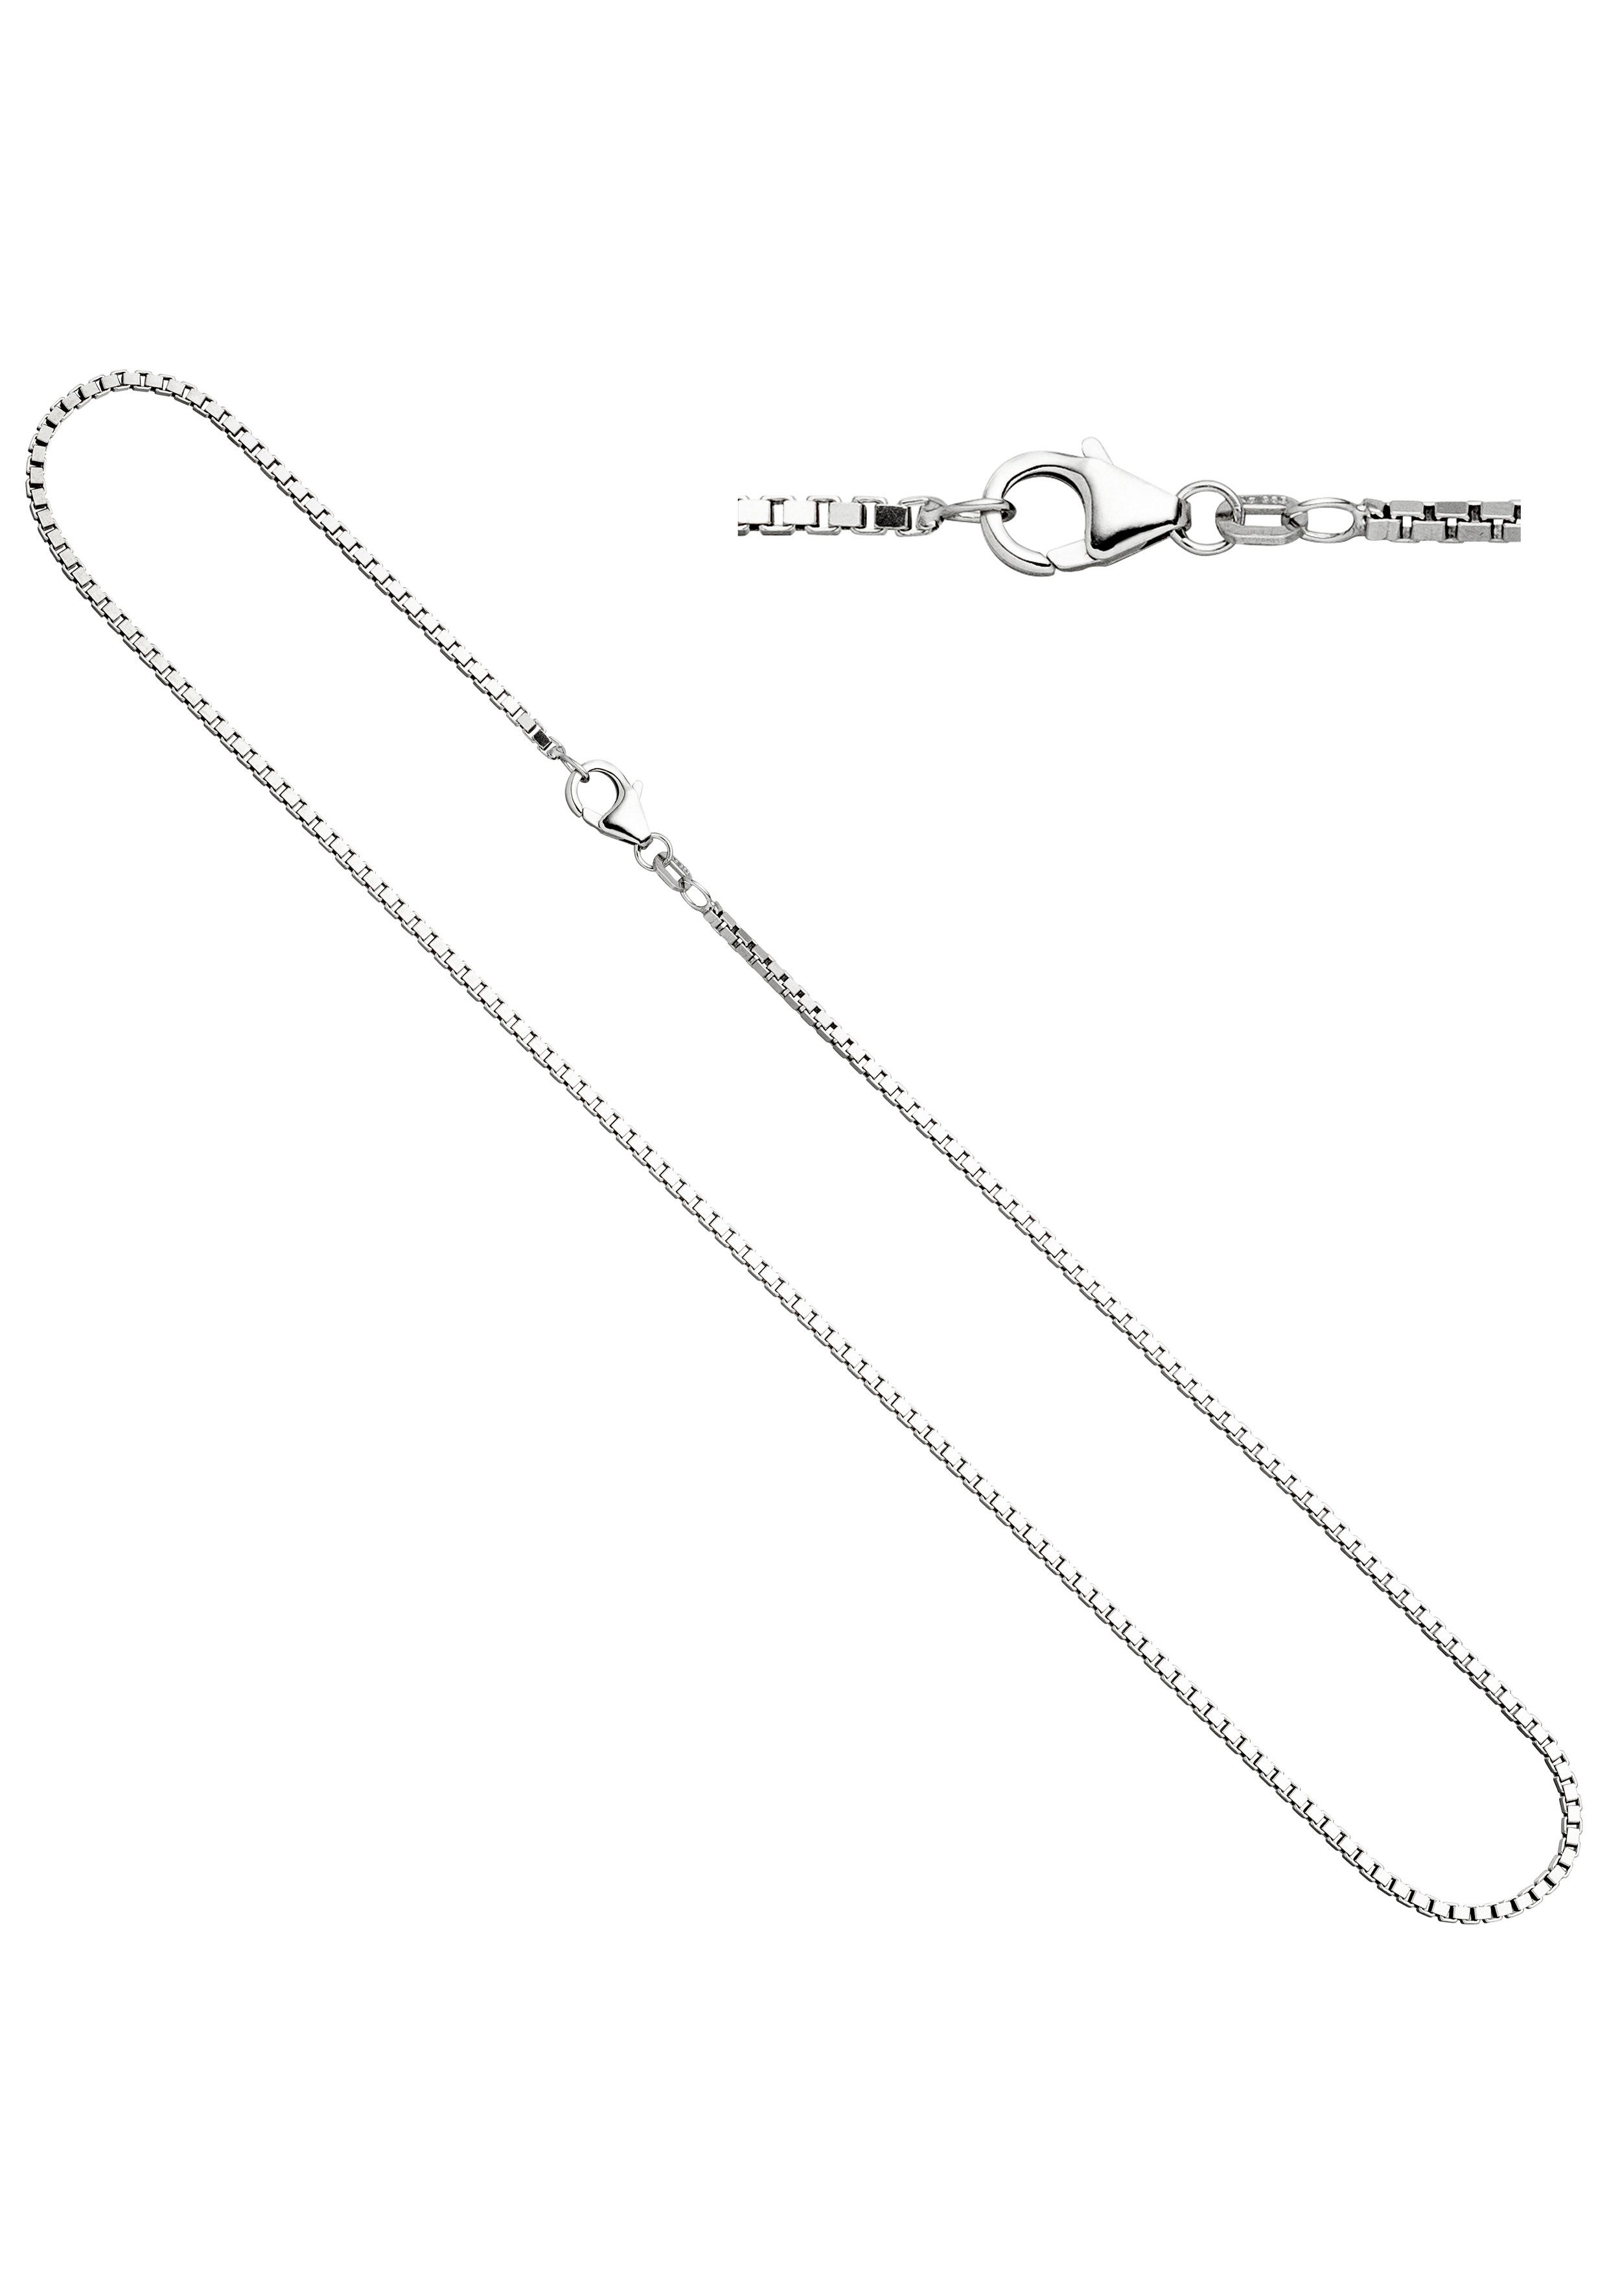 JOBO Silberkette, Venezianerkette 925 Silber 70 cm 1,8 mm online kaufen |  OTTO